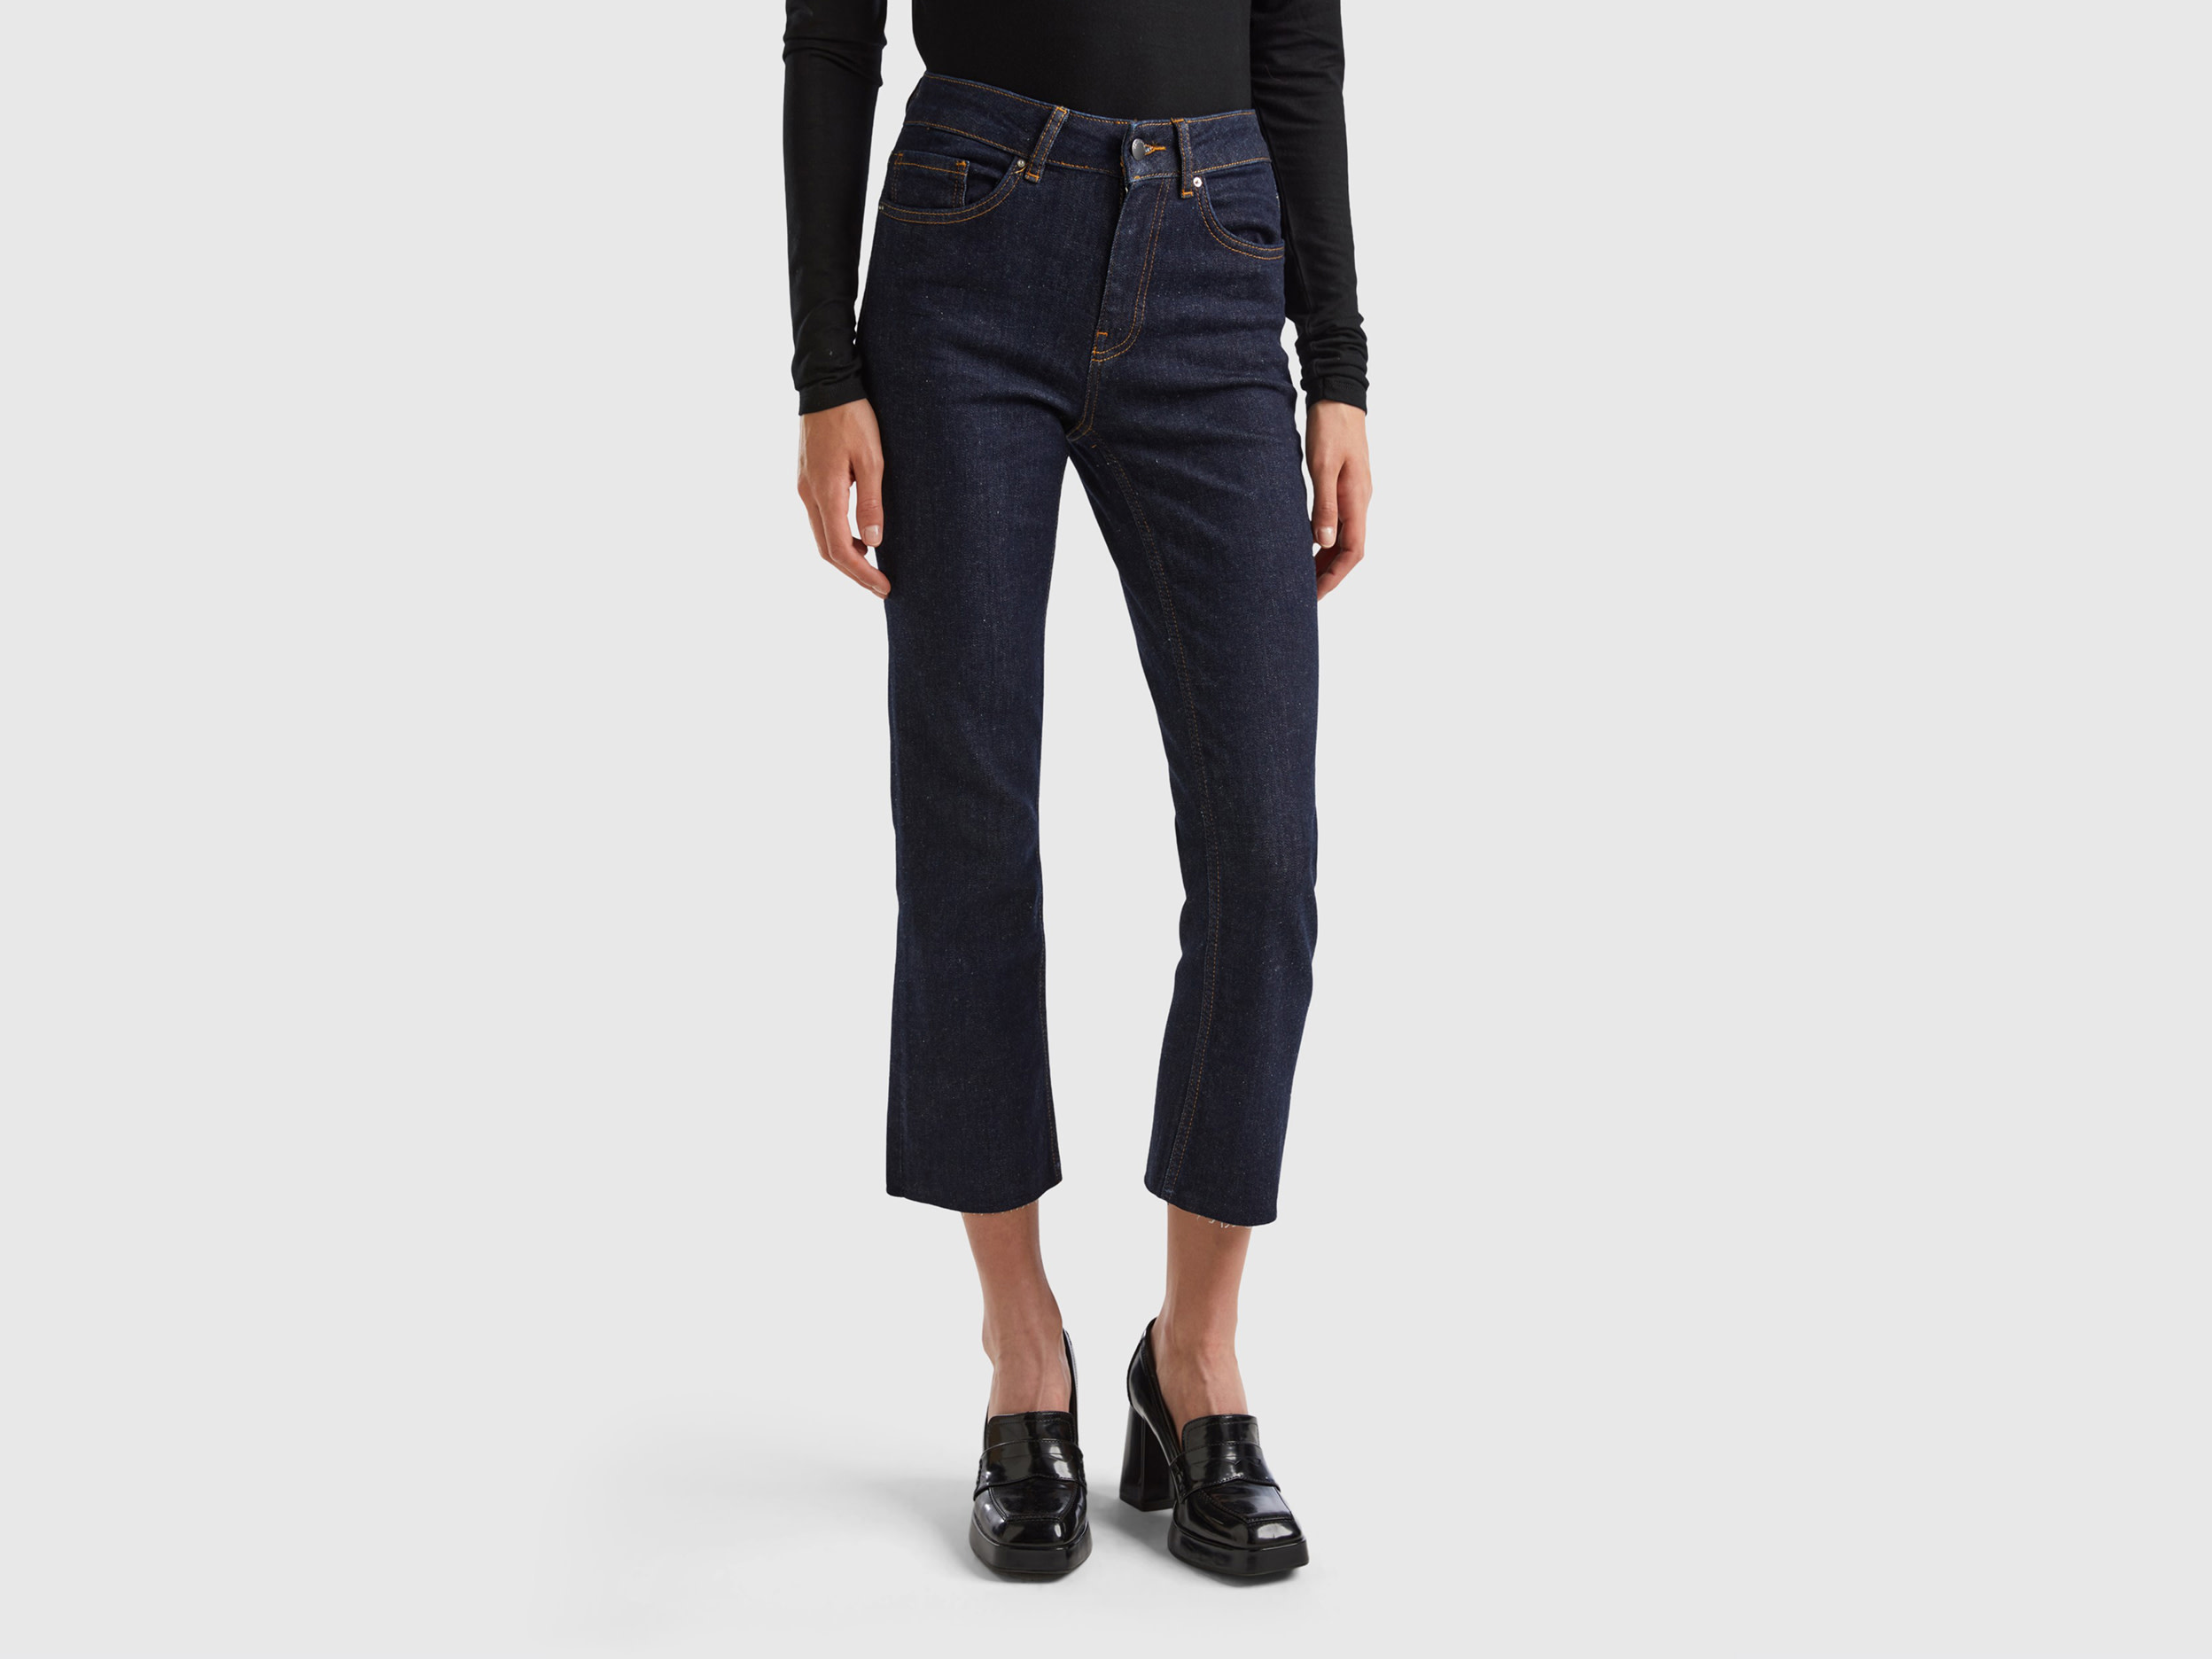 Benetton, Cropped Five-pocket Jeans, size 32, Dark Blue, Women